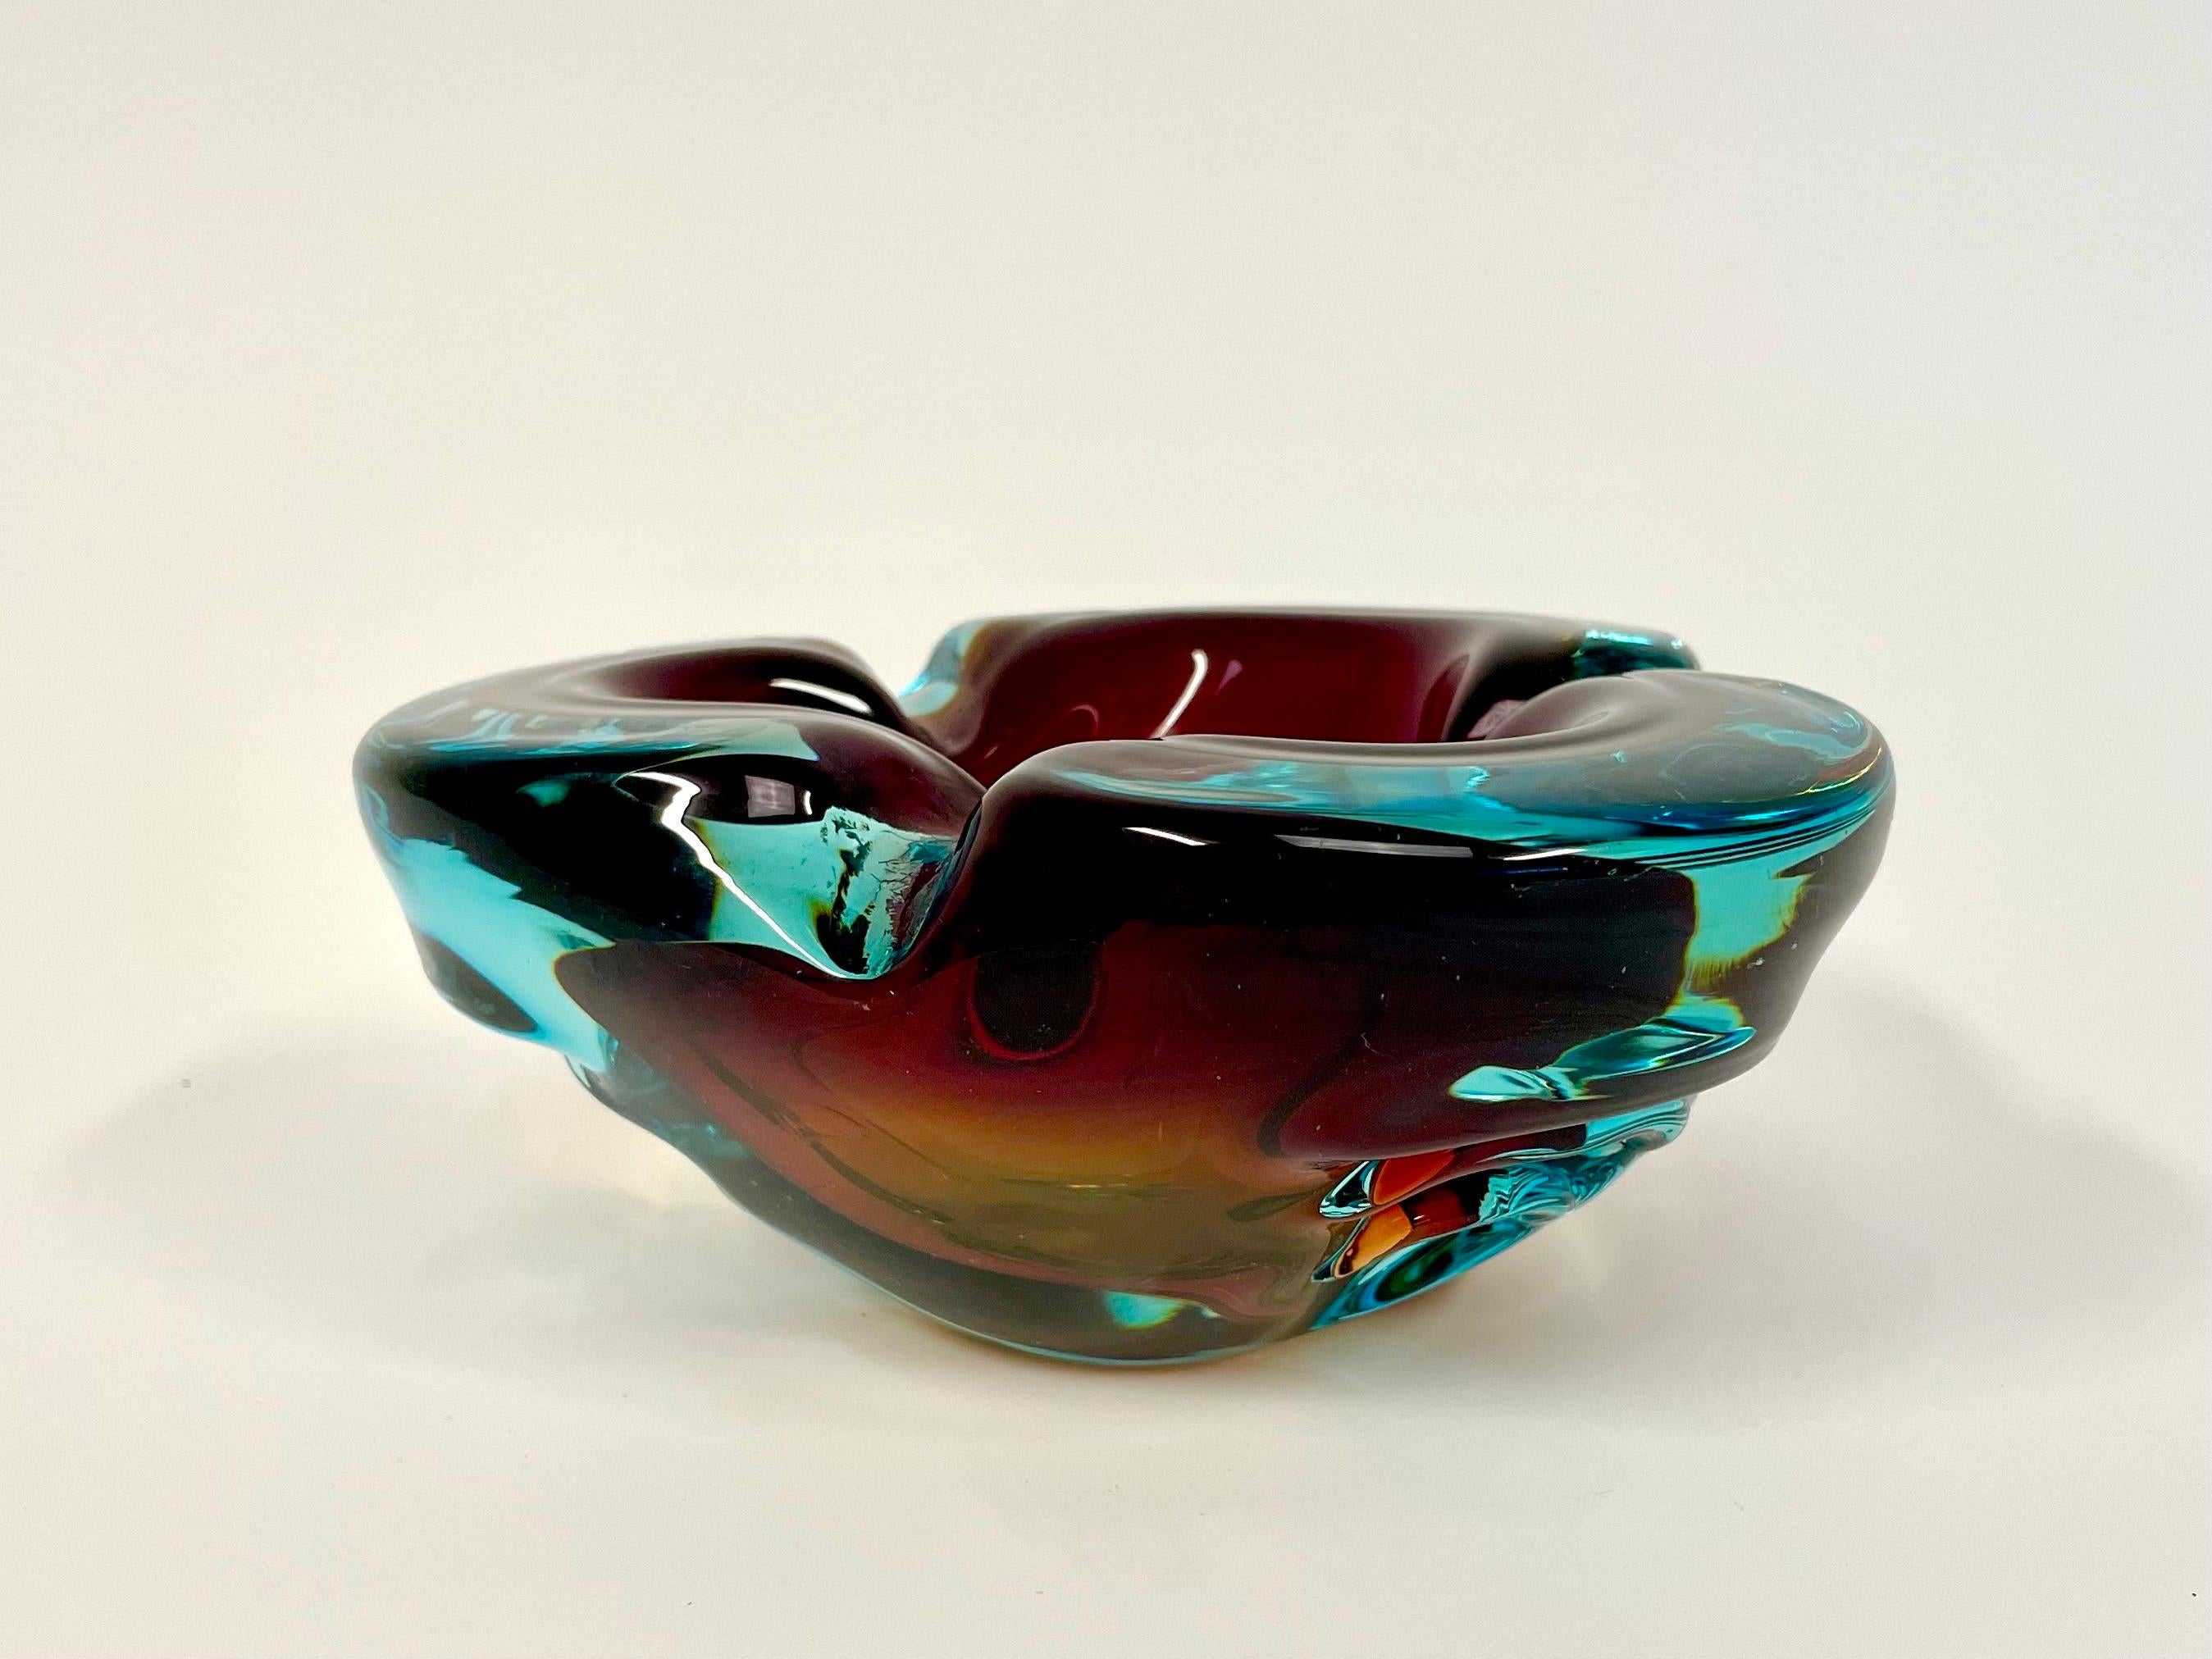 Il s'agit du lourd cendrier en verre d'art d'Alfredo Barbini, aux formes douces. Il est proposé dans une variante tricolore moisie en bleu méditerranéen avec des éléments bordeaux et un fond ambré. 

Il présente un design triangulaire avec des